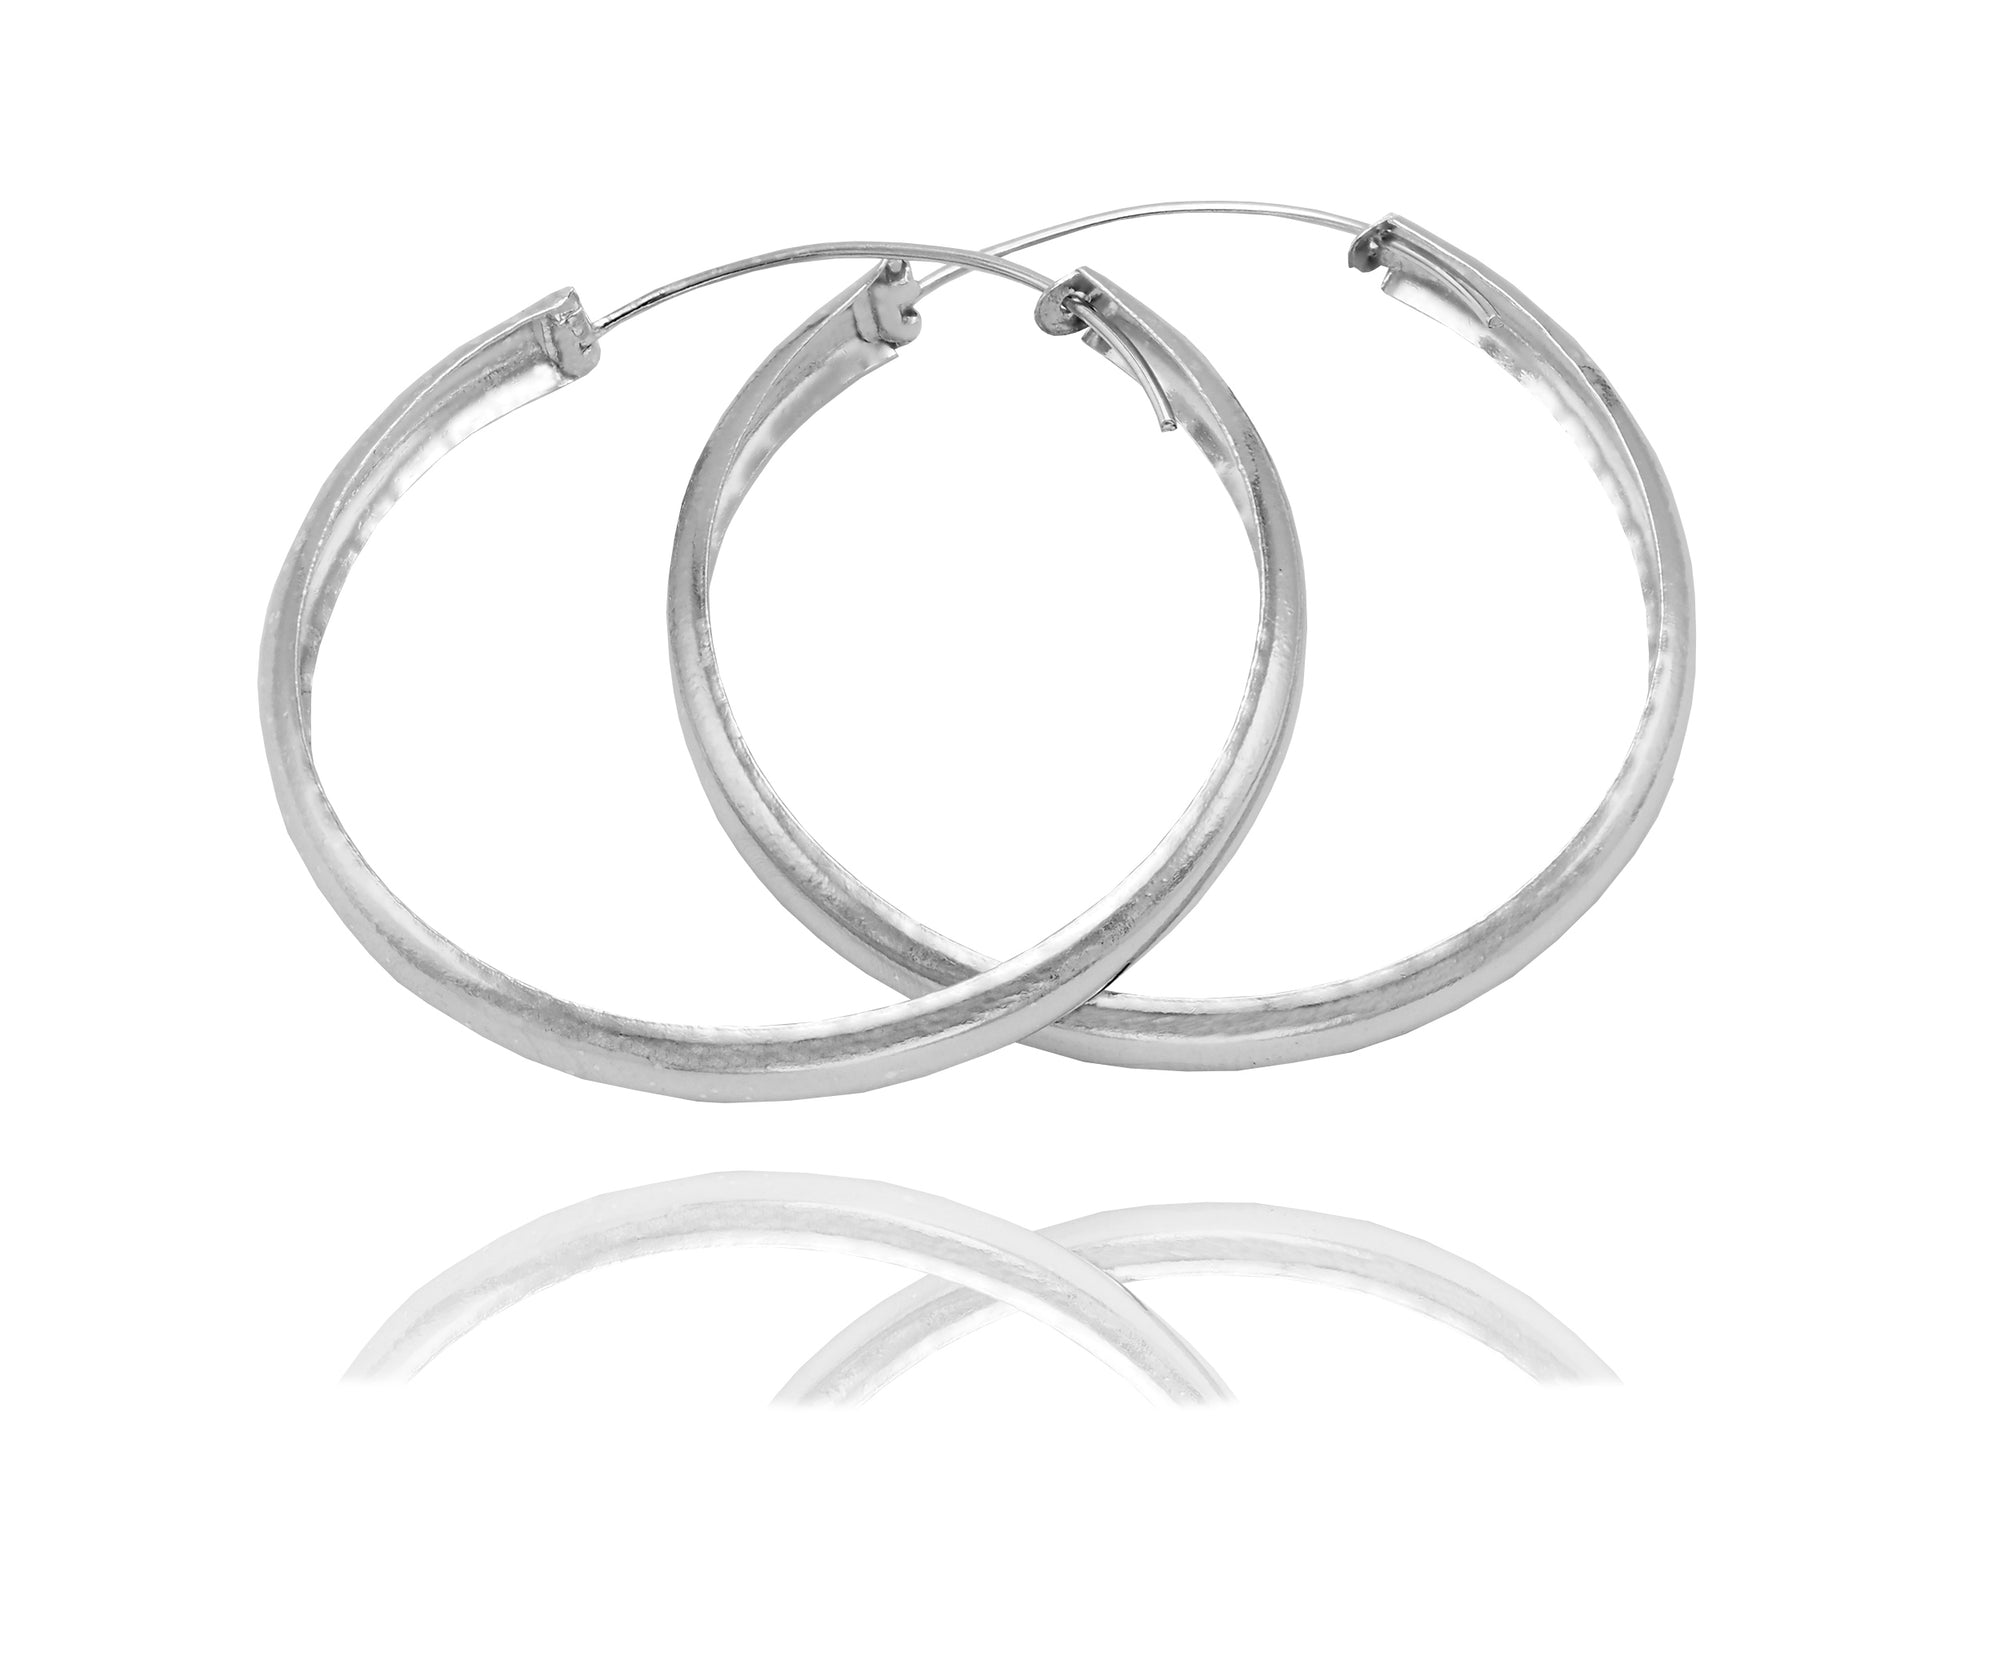 Arlette Silver Hoop Earrings, Gifts for Women